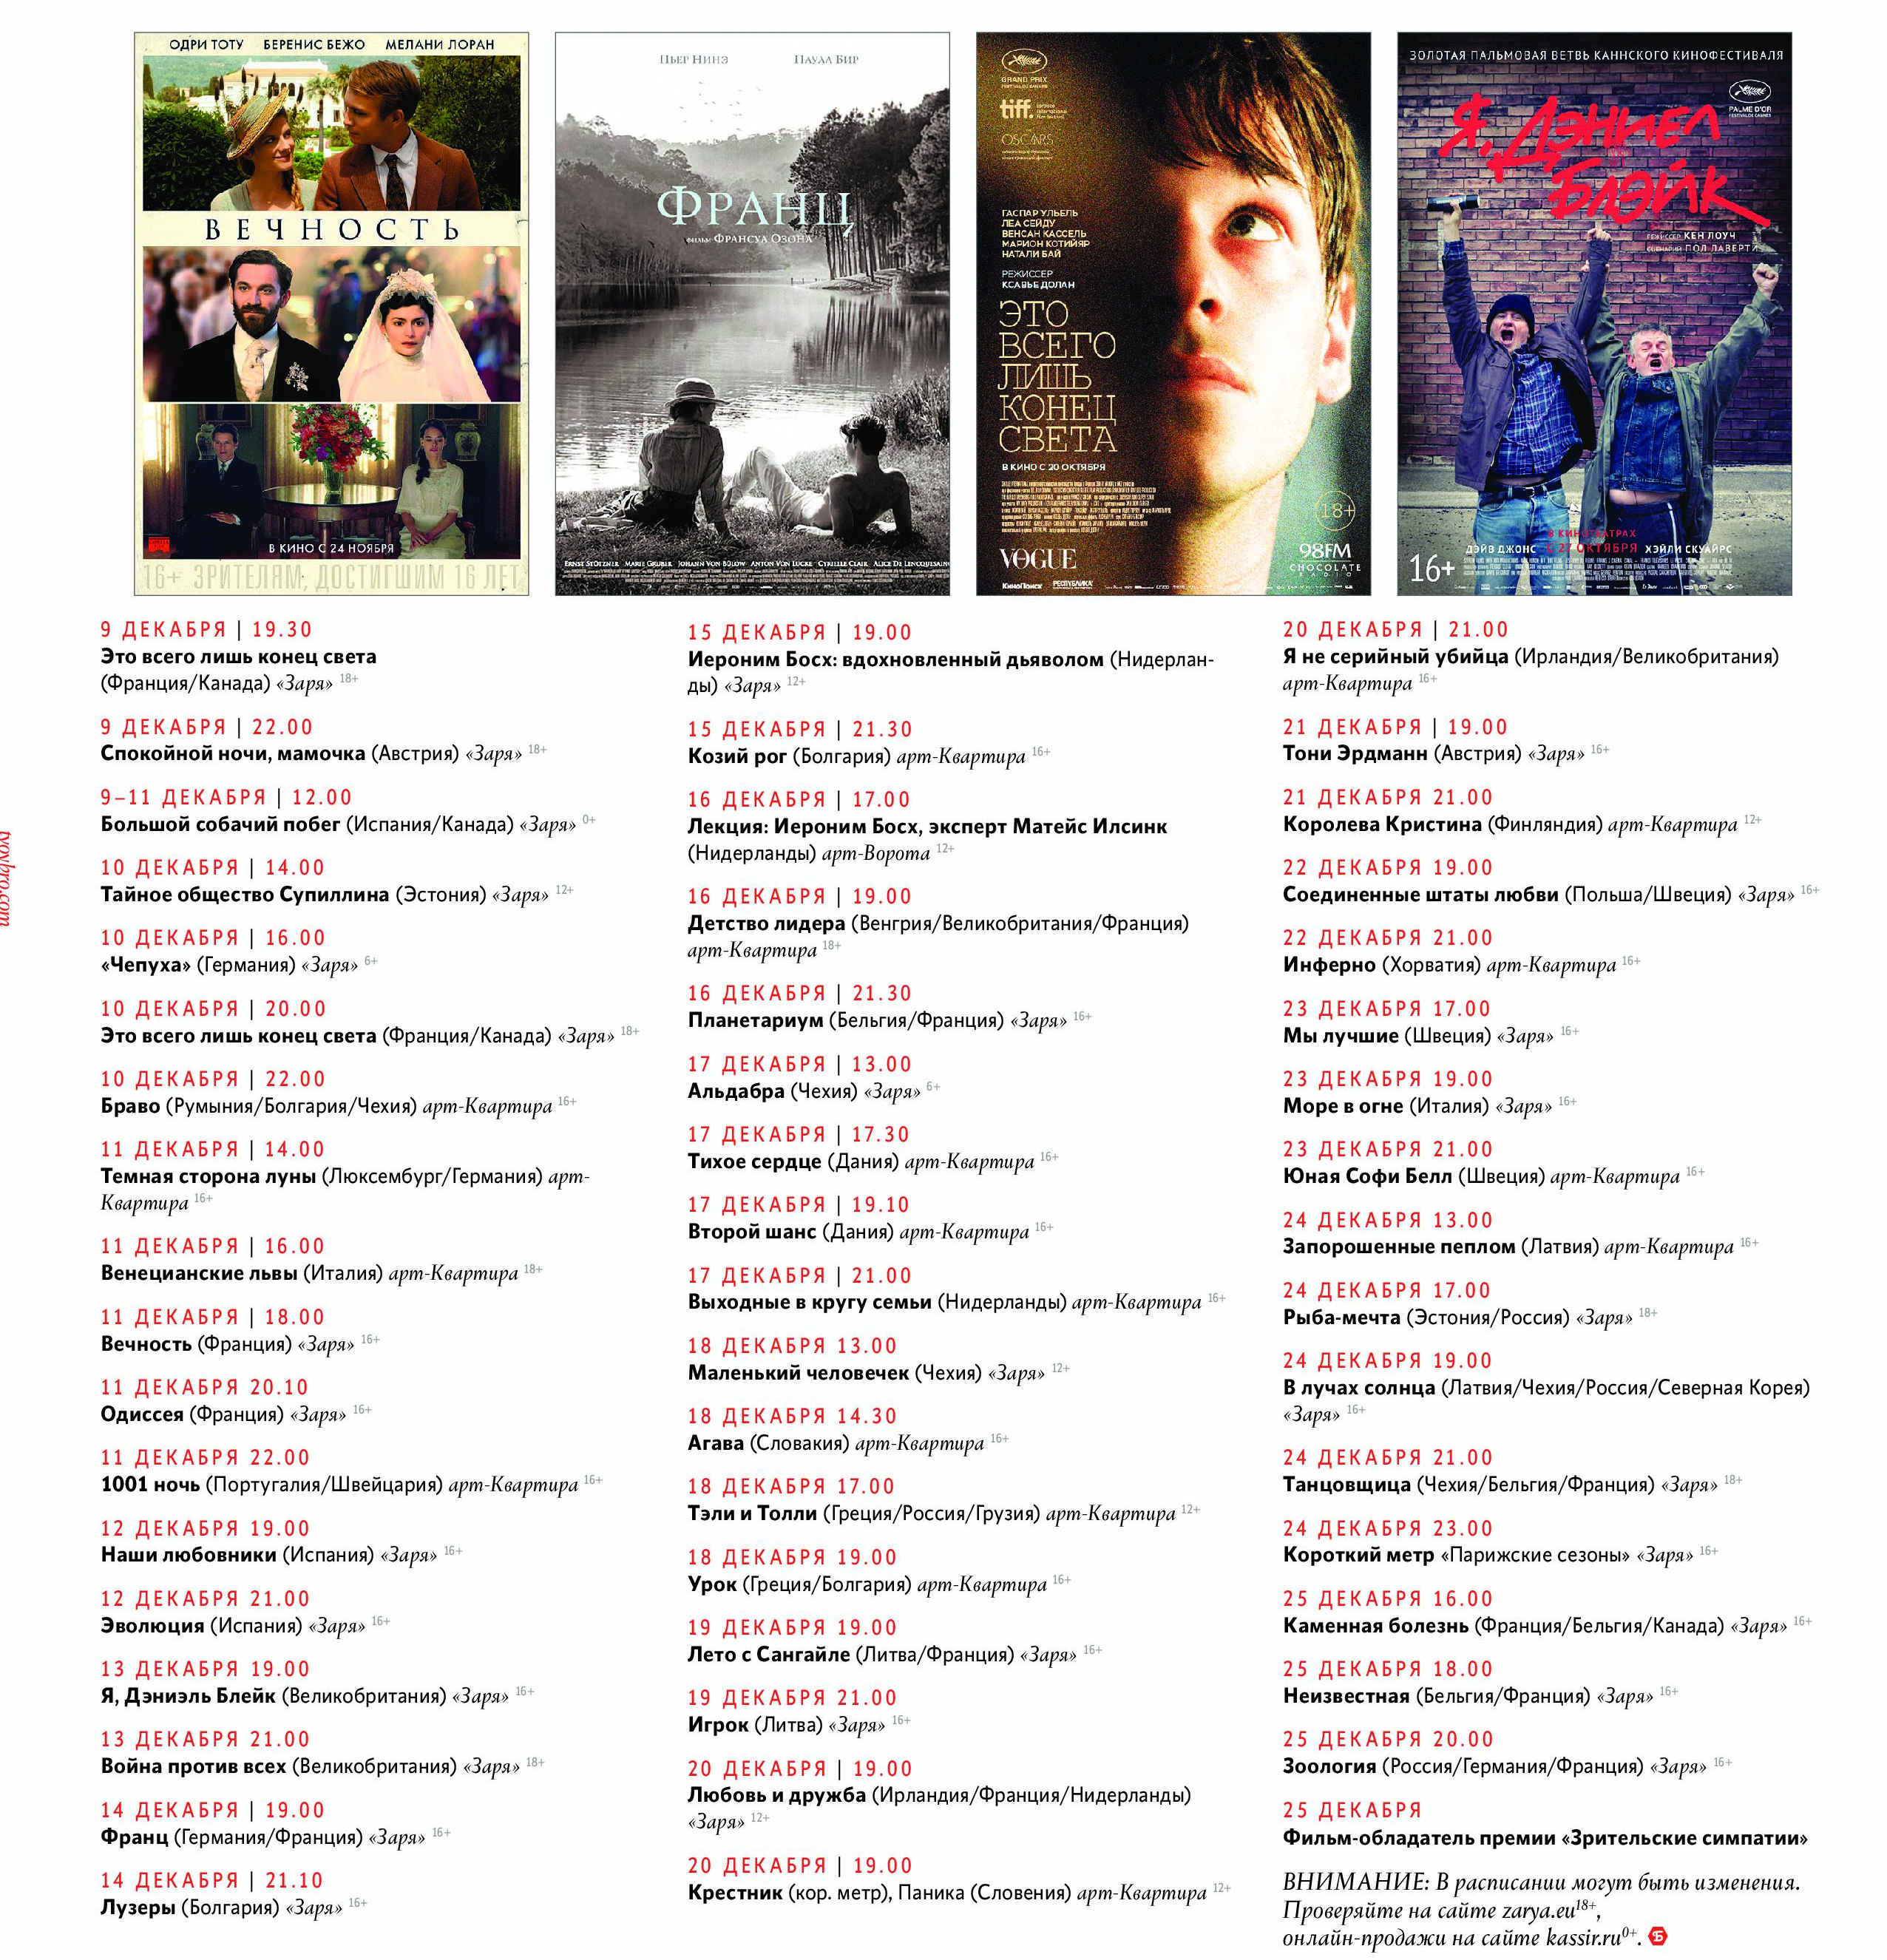 Более 50 фильмов, виниловый рынок и другие подробности фестиваля 